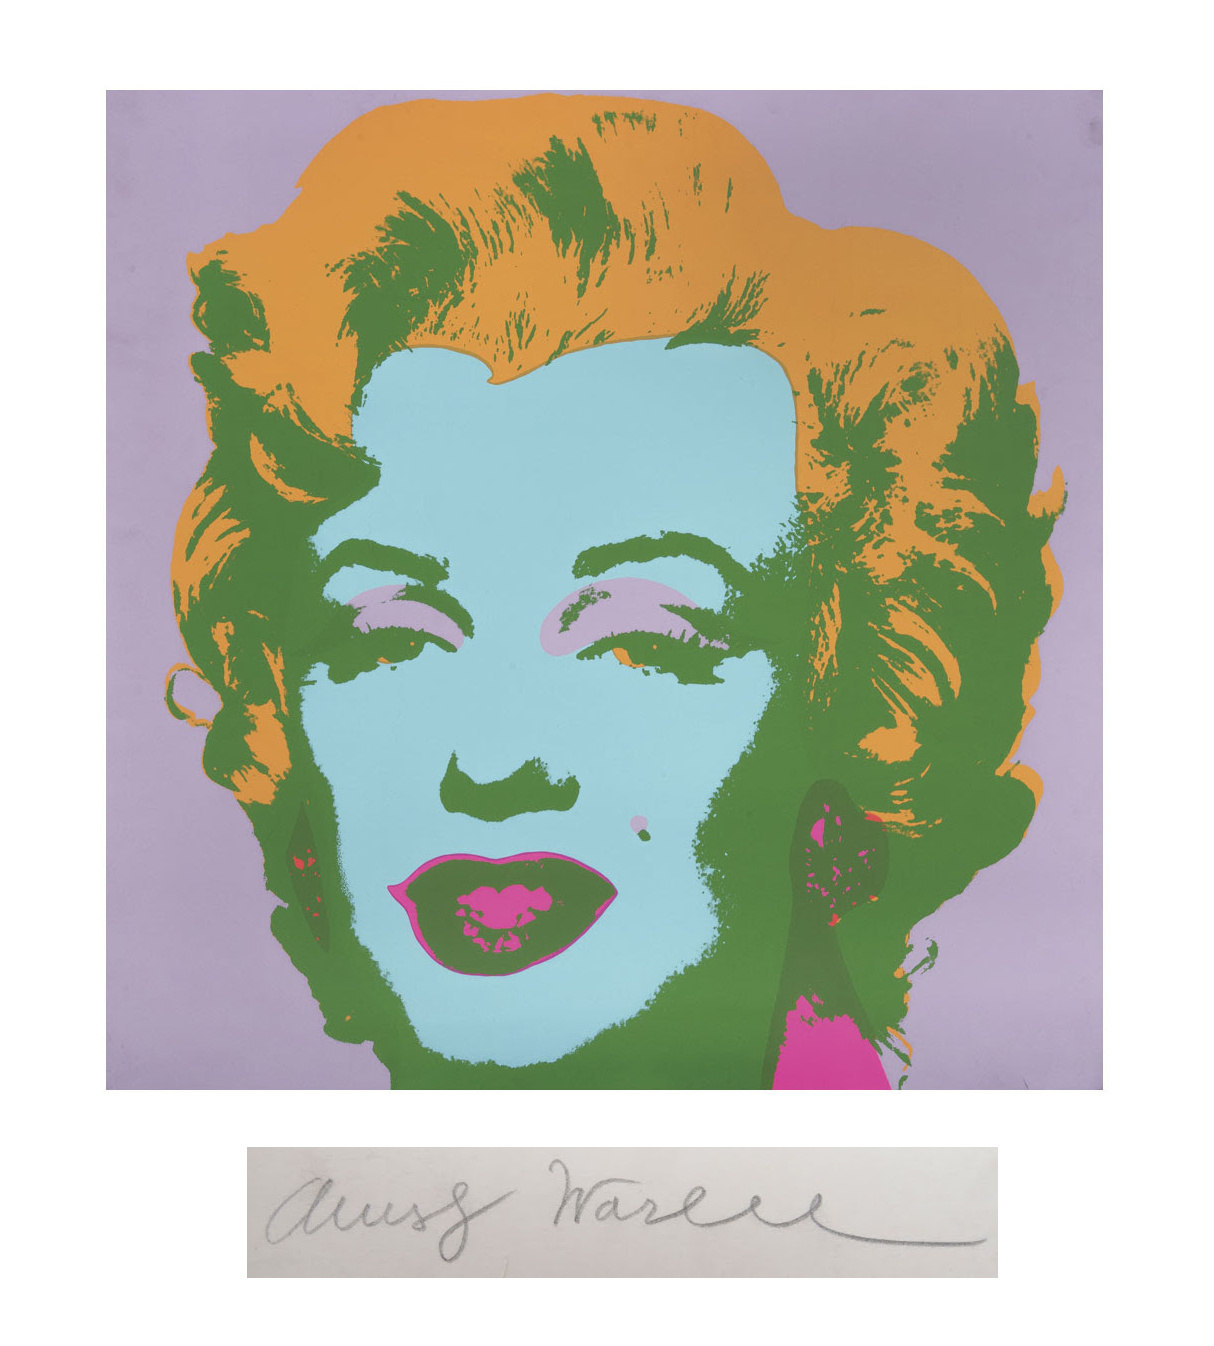  Imagen de Marilyn Monroe firmada por Andy Warhol será subastada en México